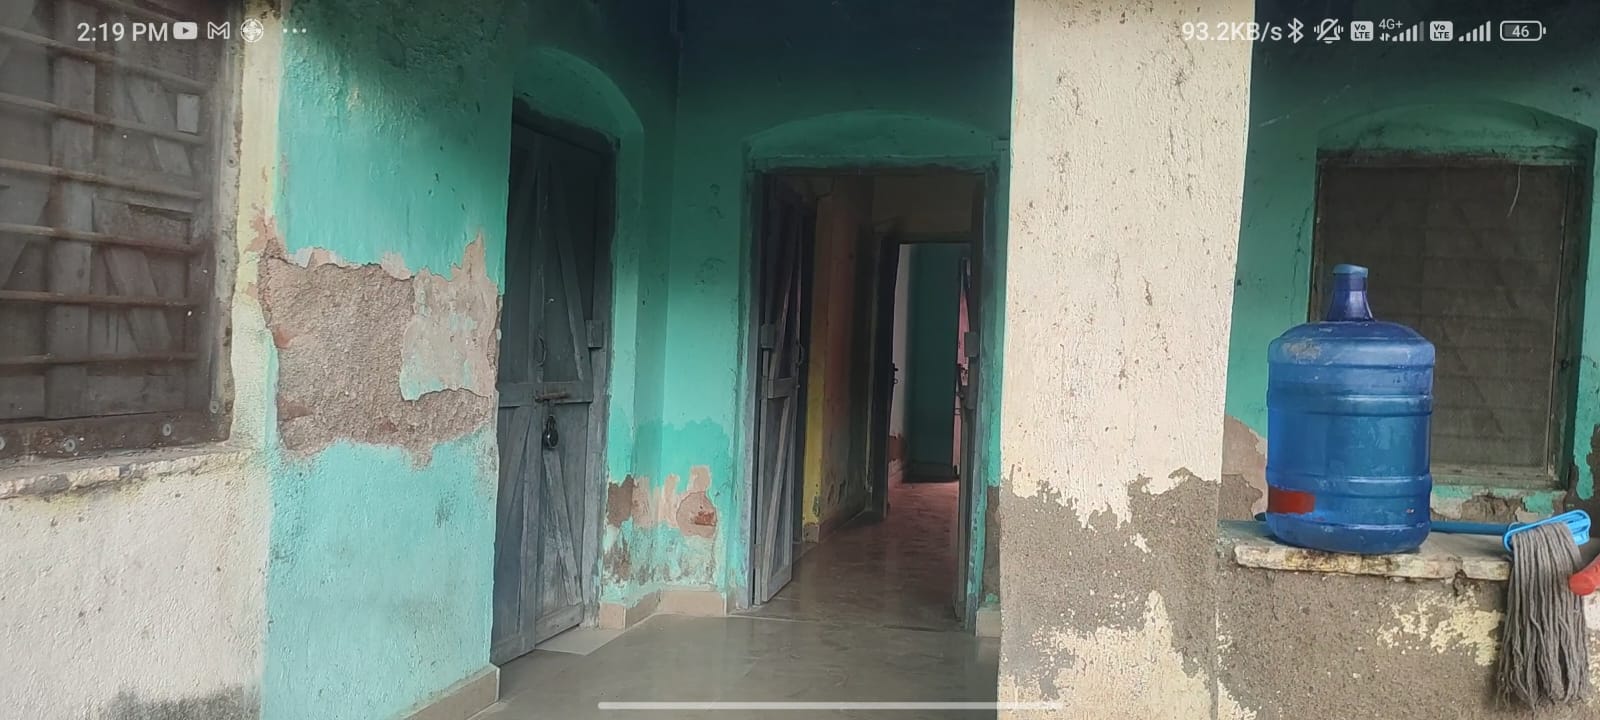 घाणीच्या साम्राज्य असलेल्या इमारती मध्ये हिंदुहृदयसम्राट बाळासाहेब ठाकरे आपला दवाखान्याचे  उदघाटन